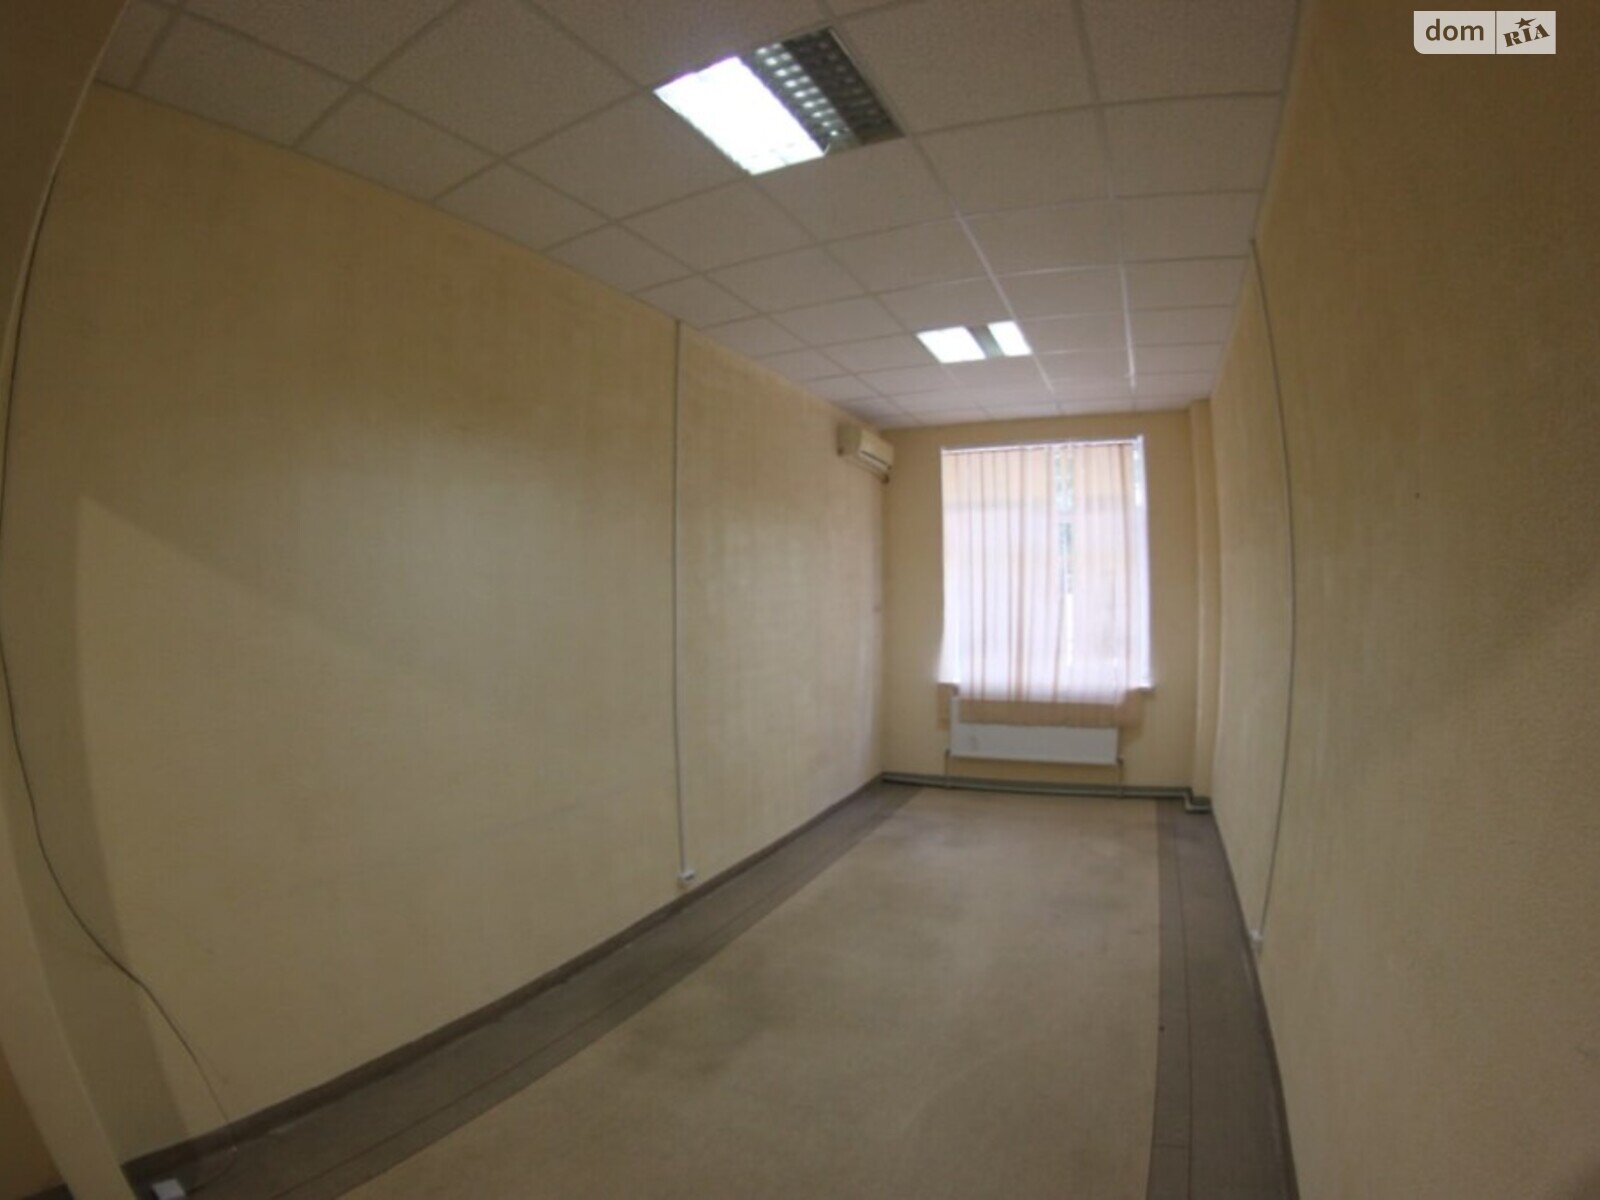 Аренда офисного помещения в Днепре, Ольги княгини улица, помещений - 2, этаж - 1 фото 1